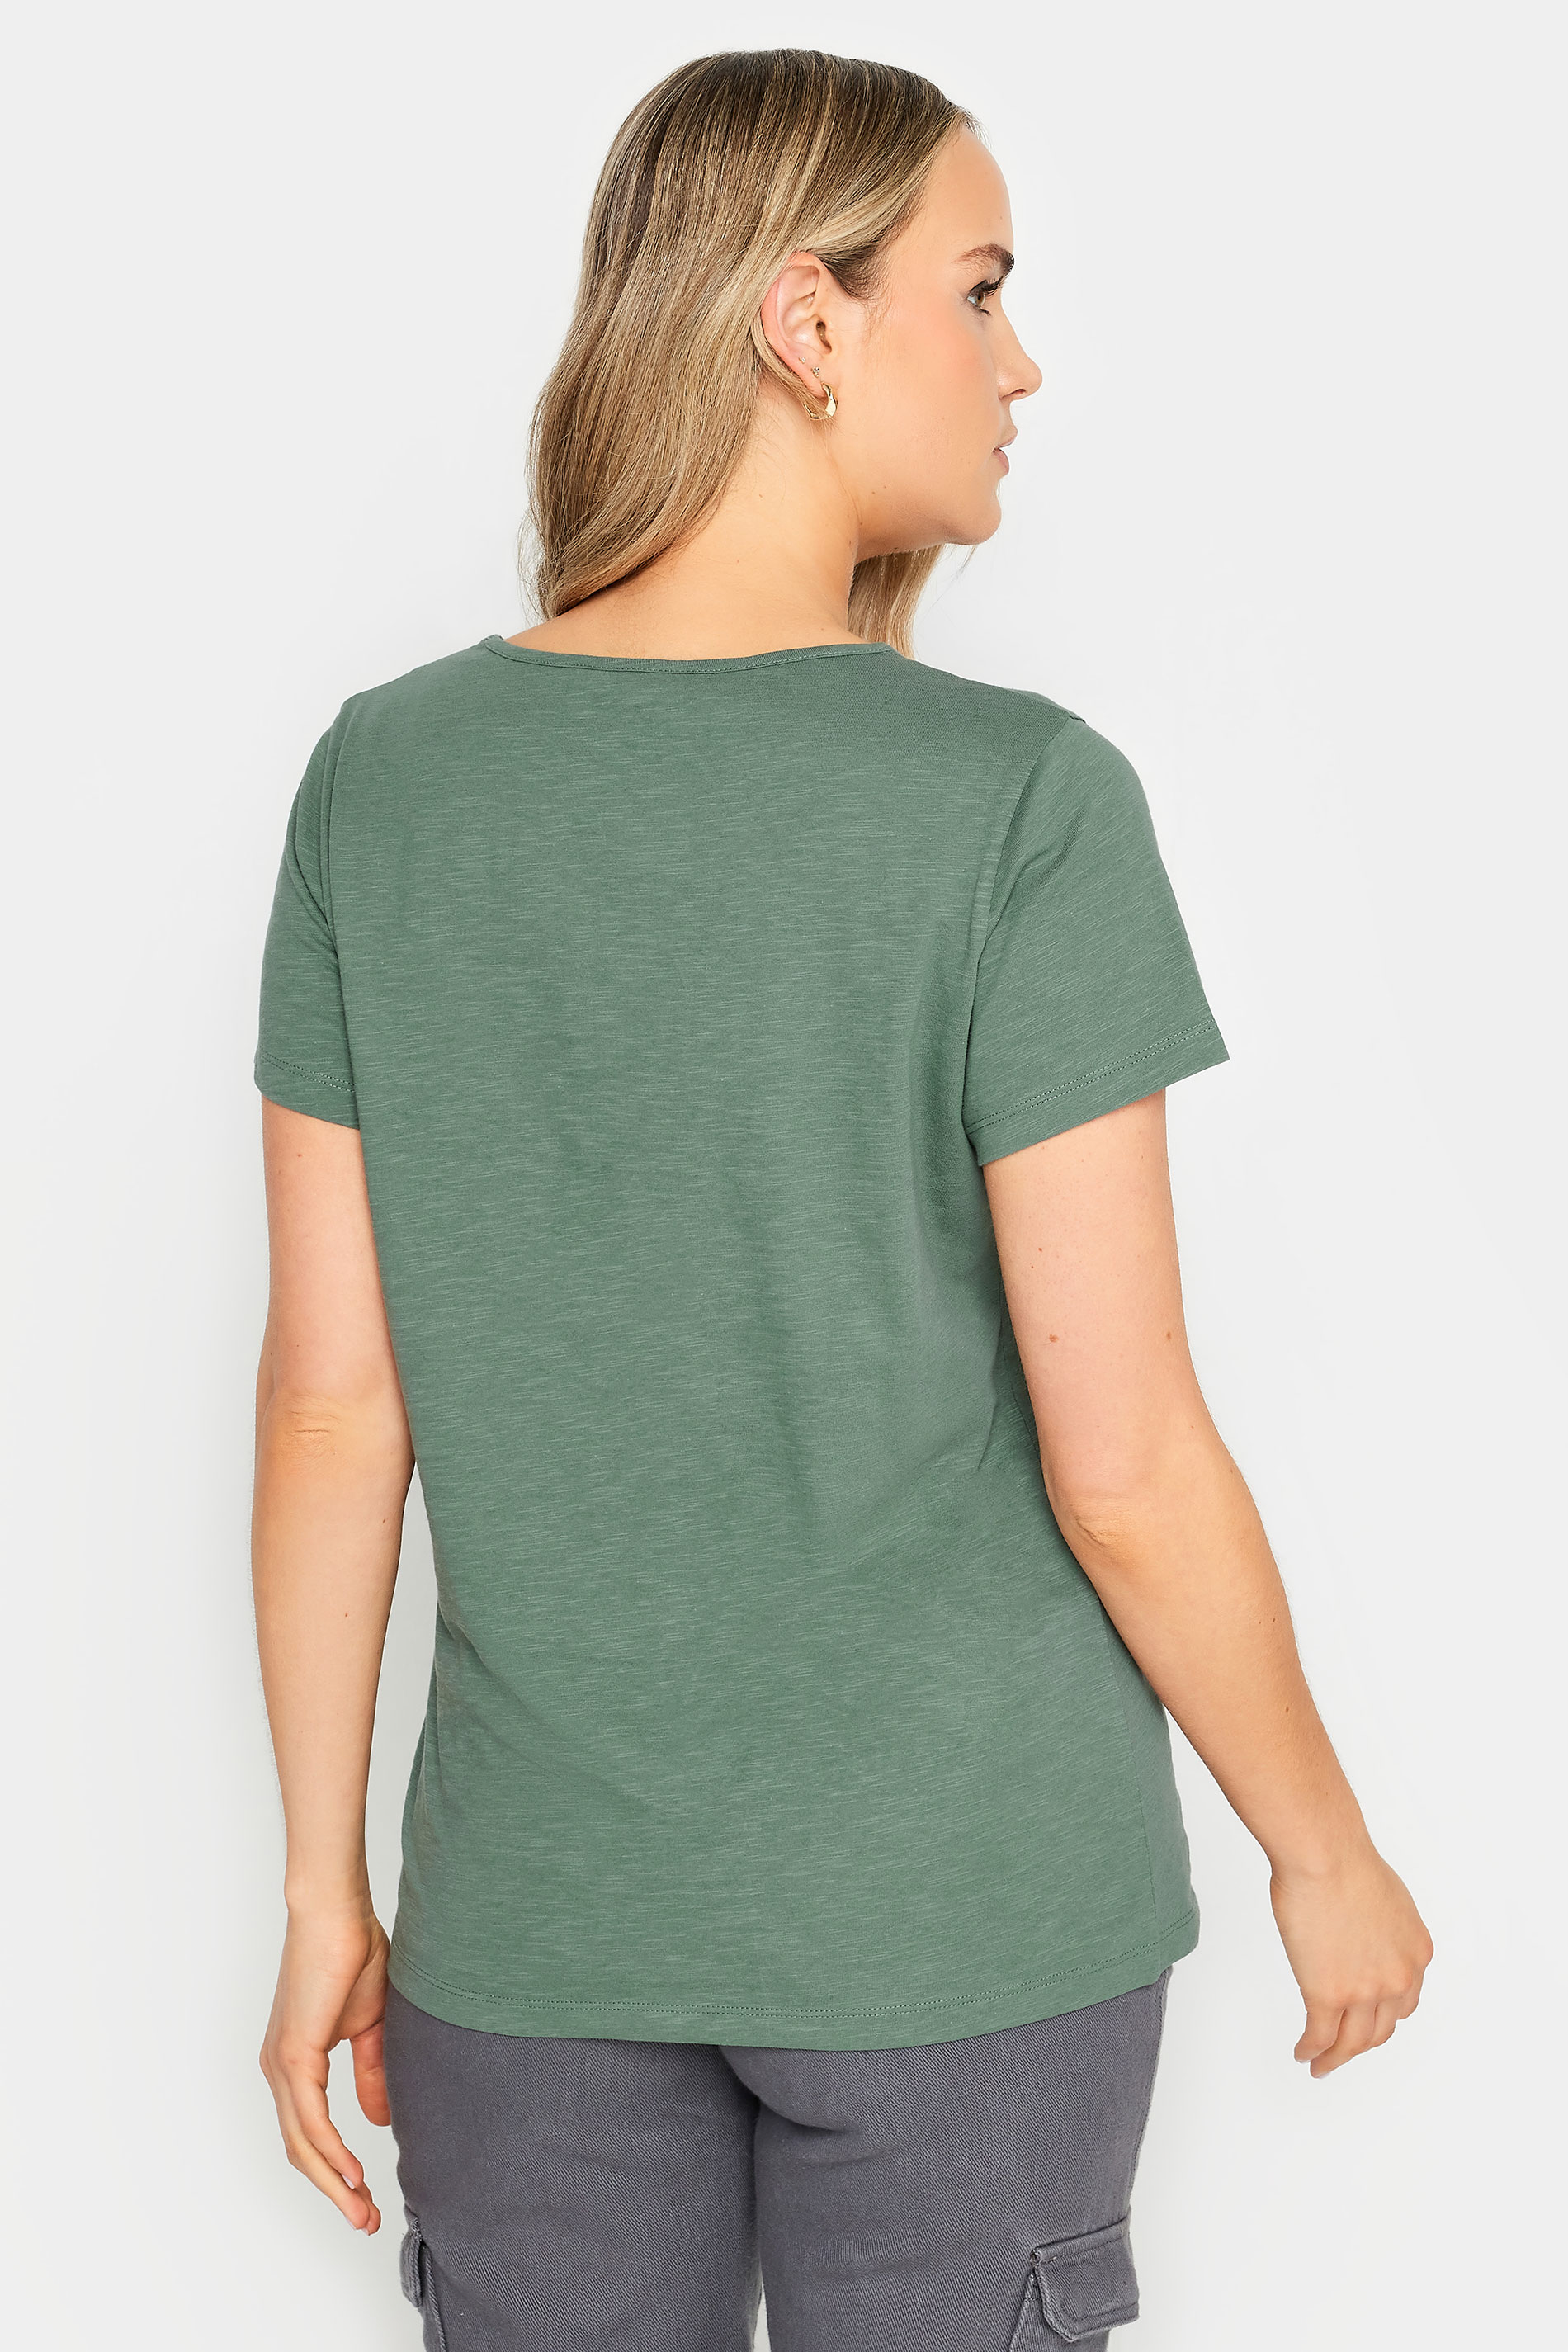 LTS Tall Womens Khaki Green Short Sleeve T-Shirt | Long Tall Sally 3